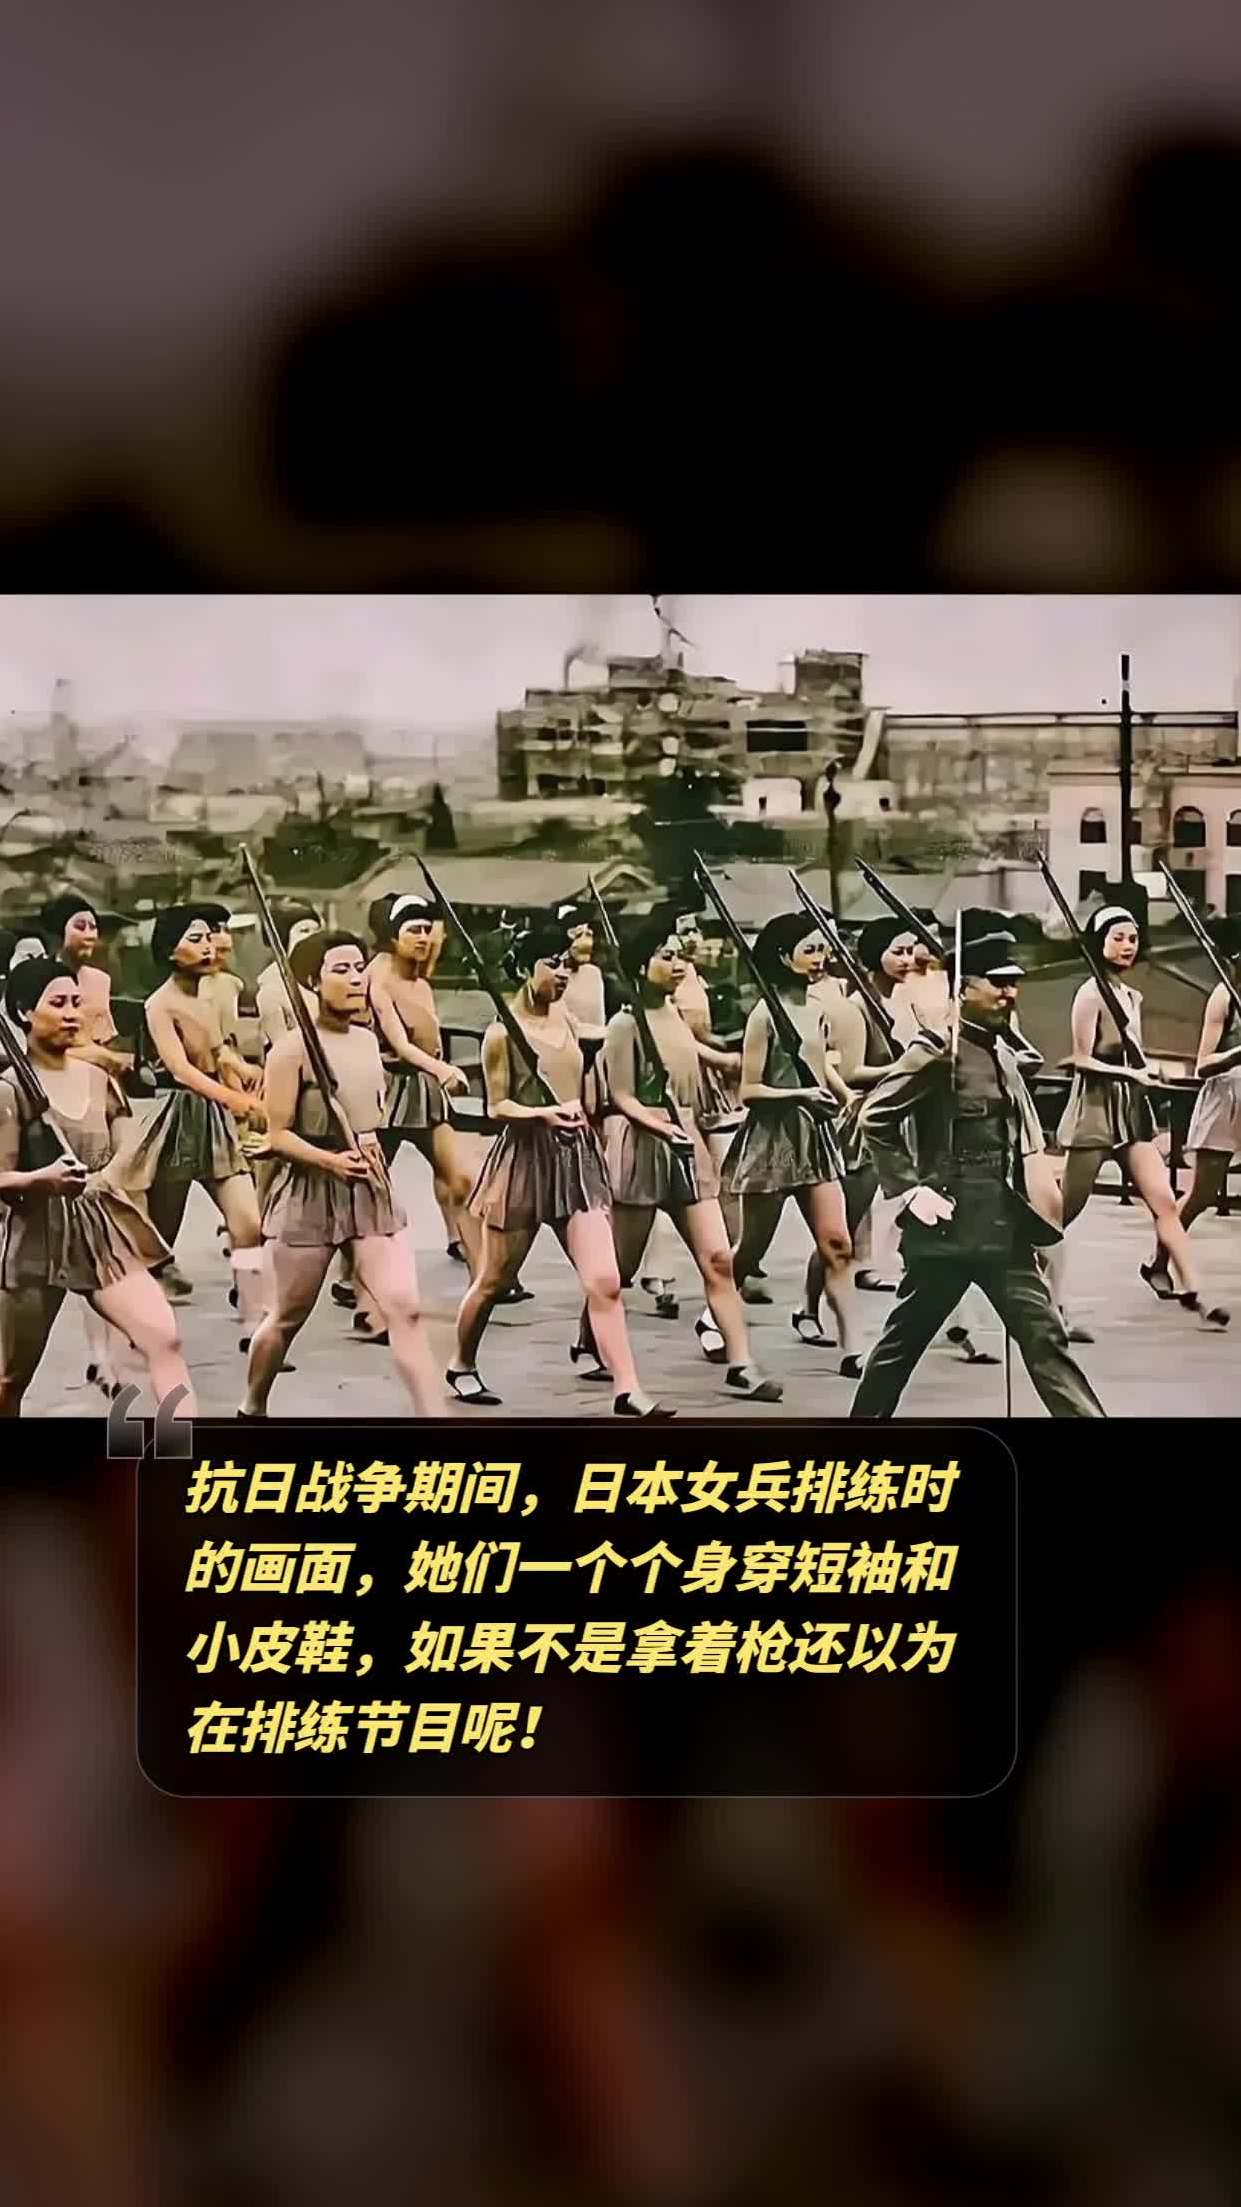 抗日战争期间,日本女兵排练时的画面,她们一个个身穿